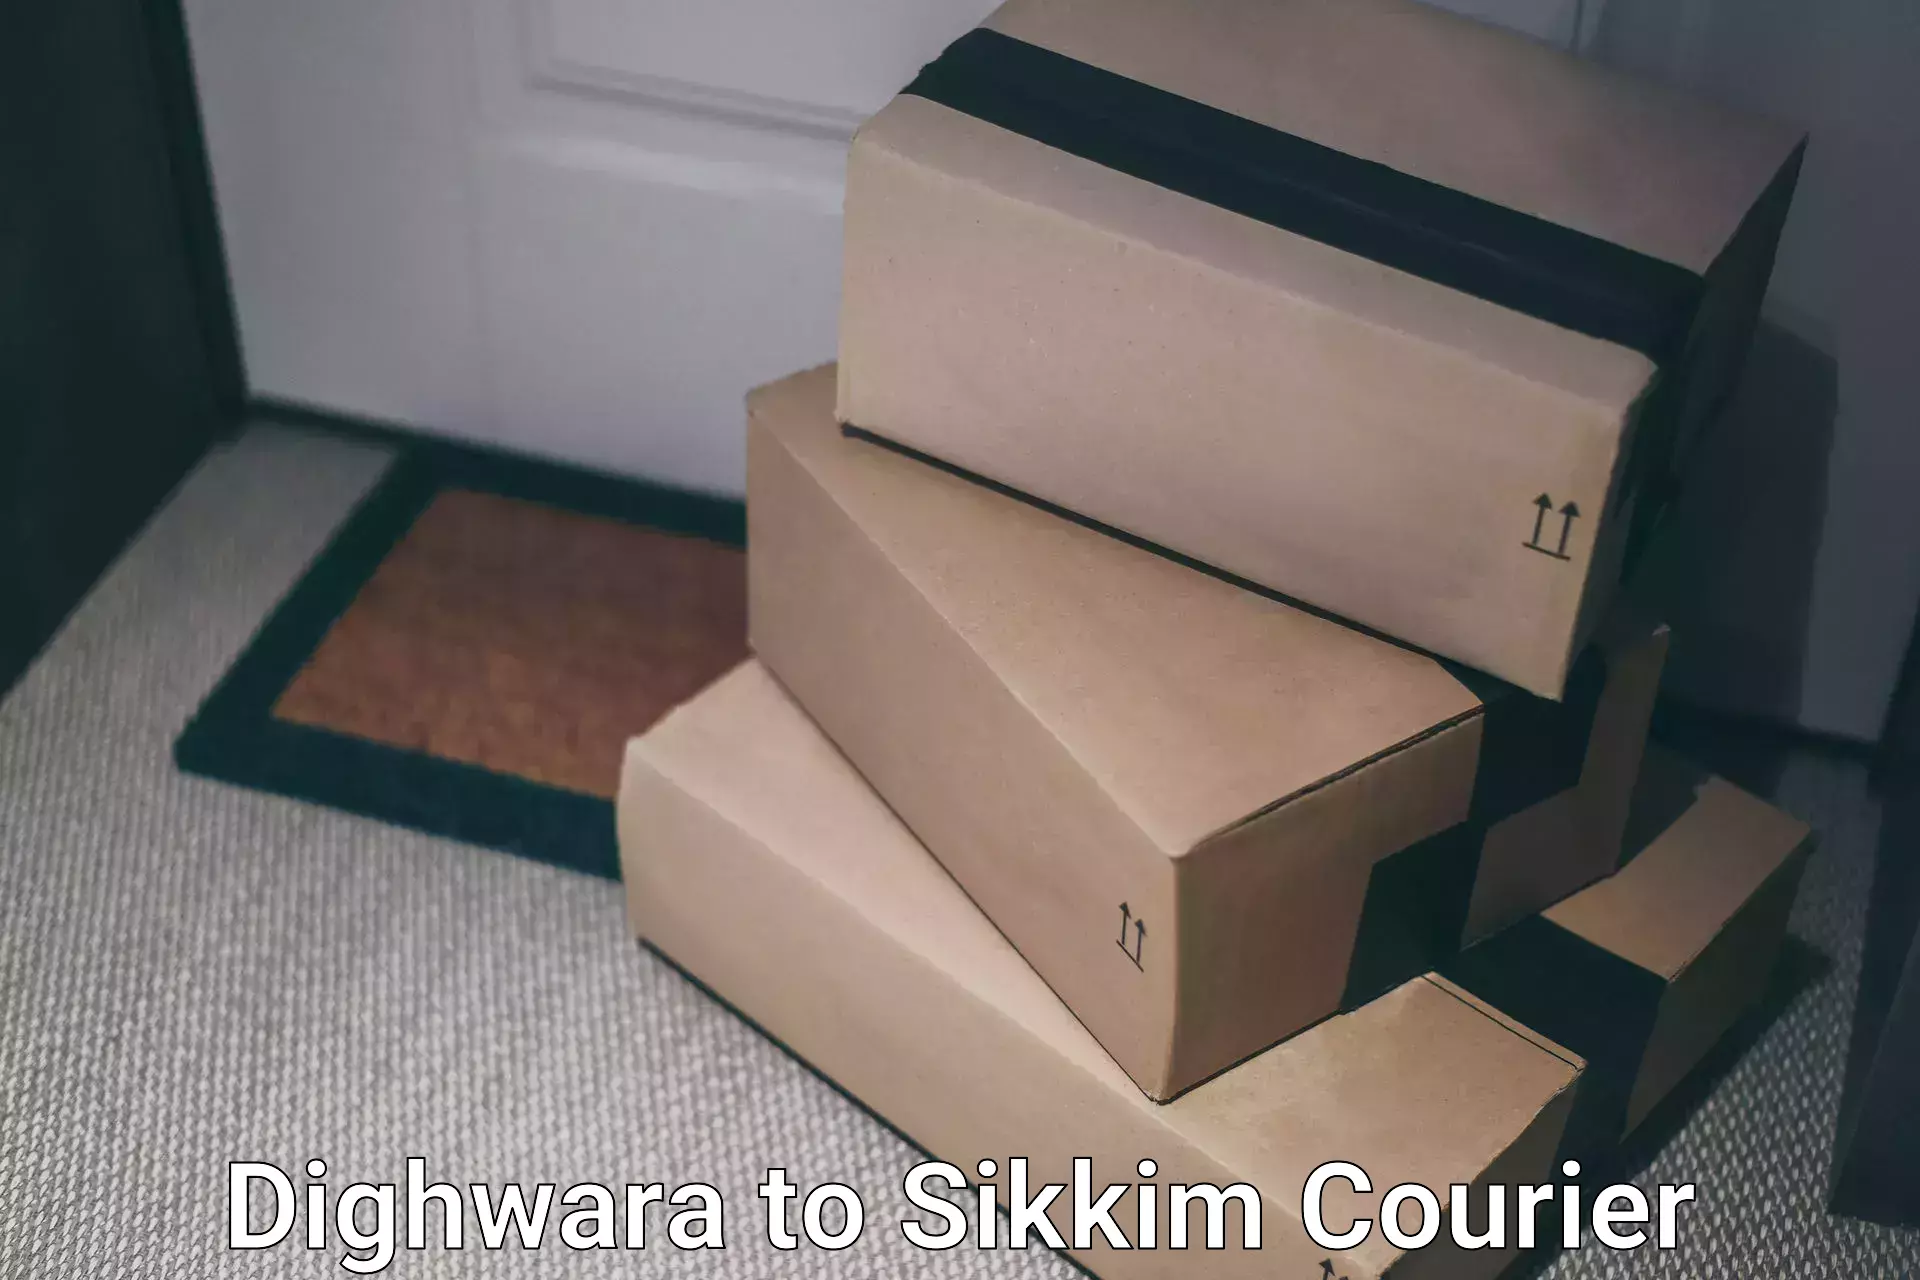 Efficient freight service Dighwara to Sikkim